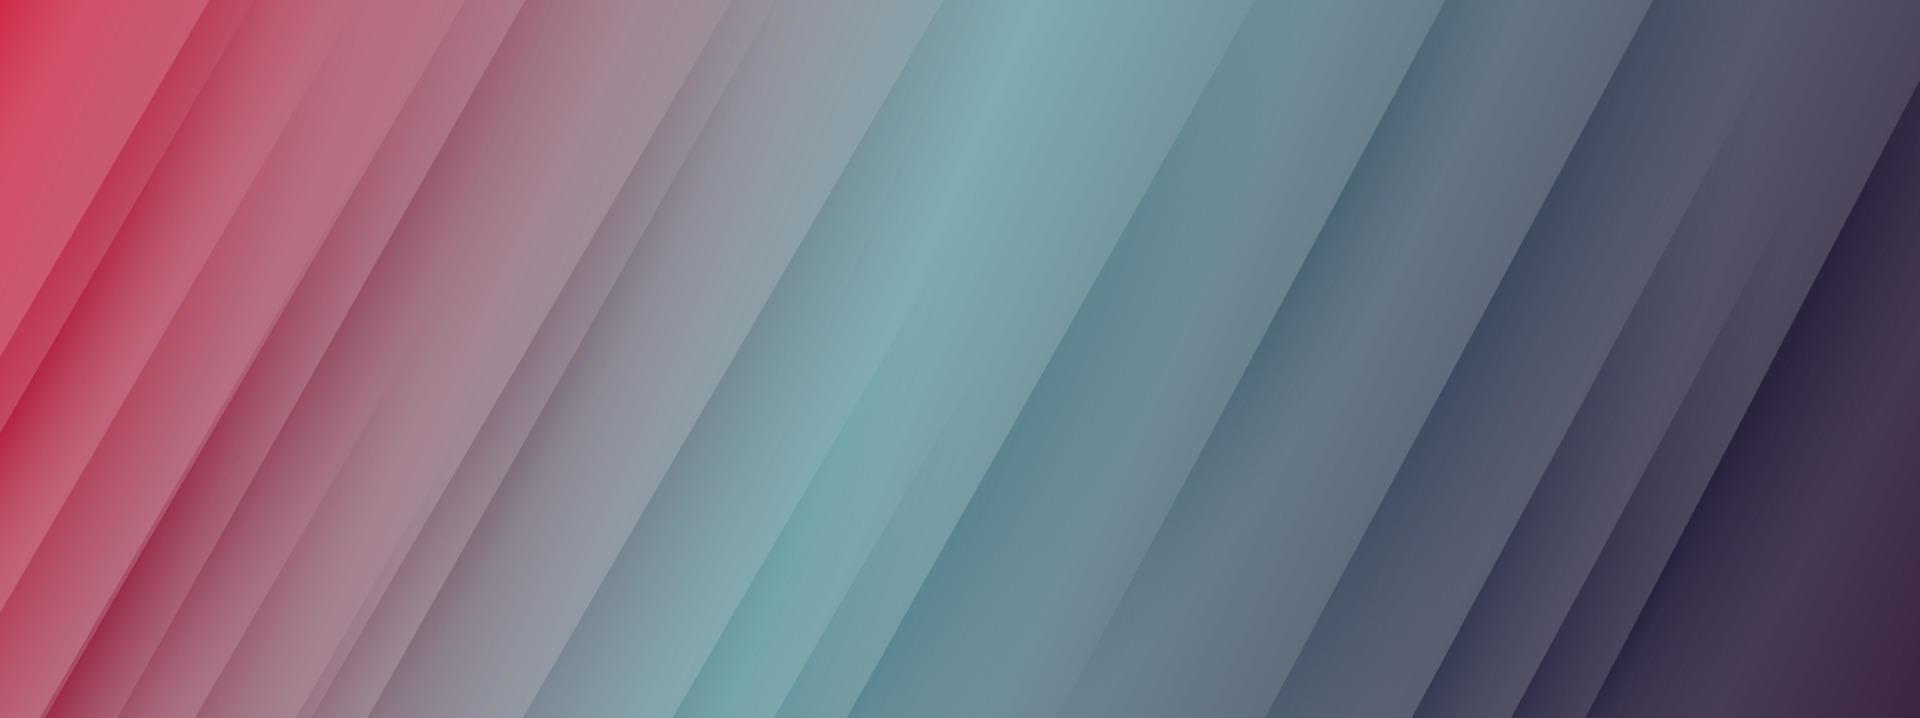 papier multicolore abstrait avec vecteur de fond d'ombre